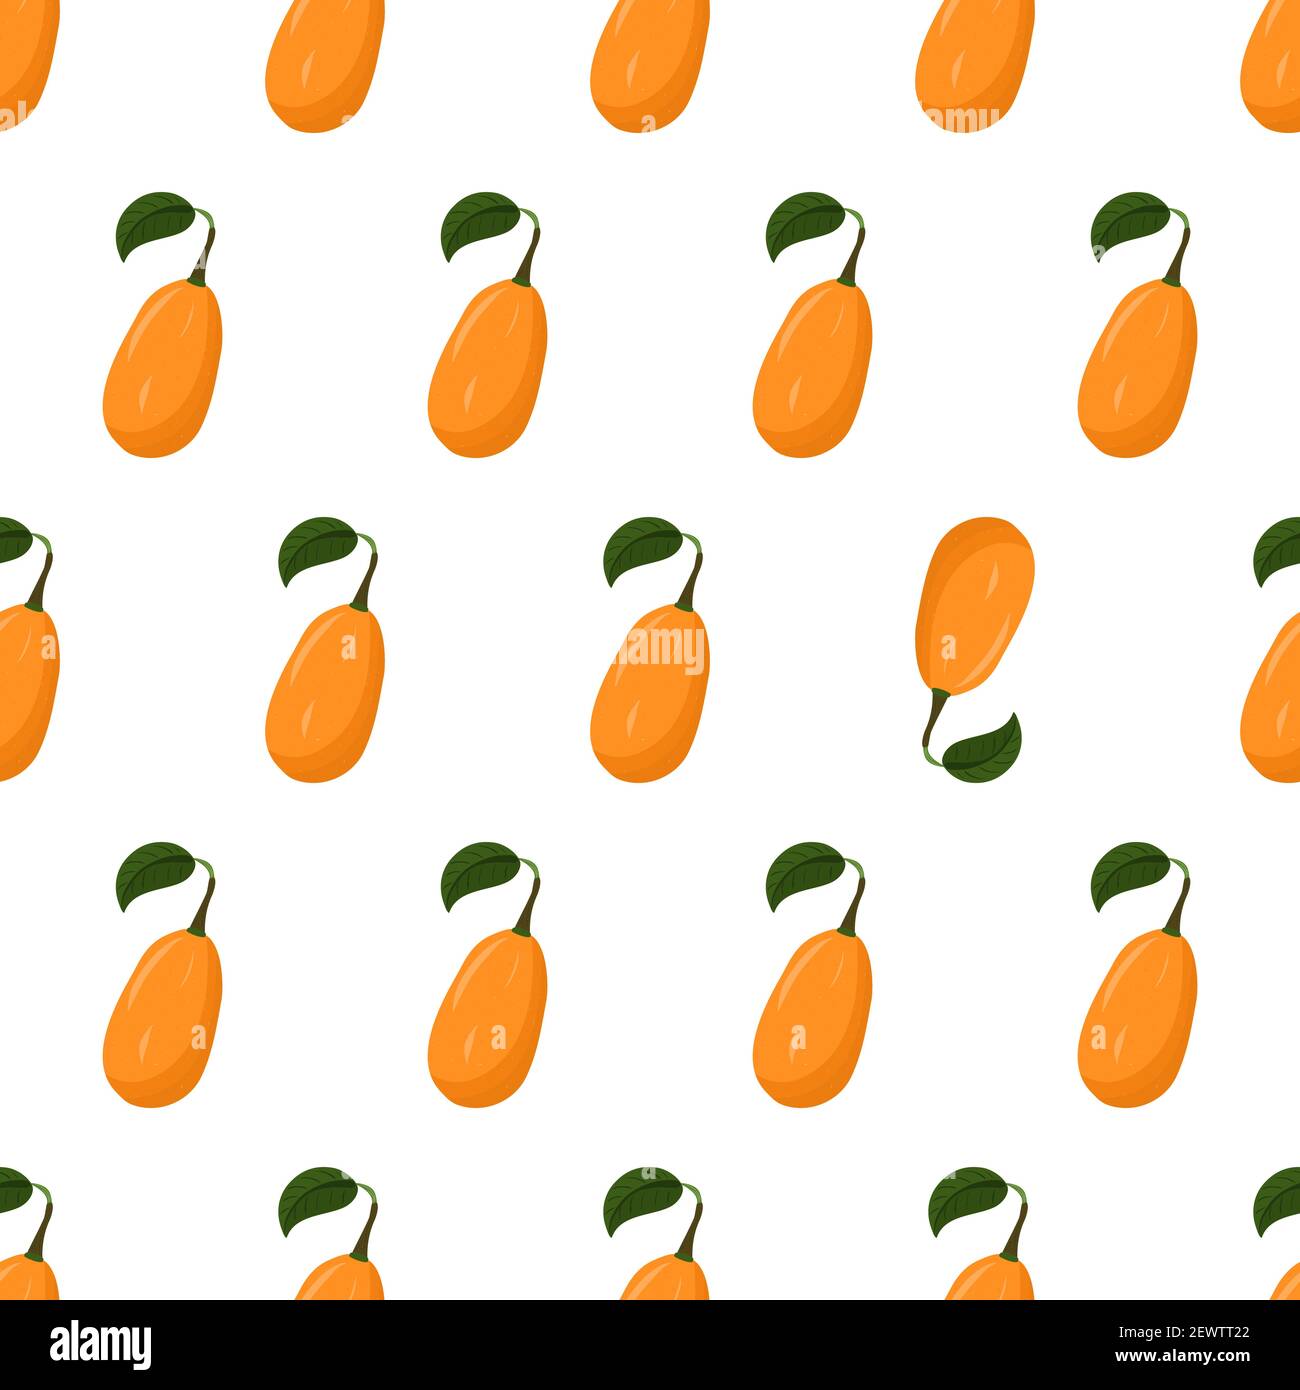 Cartoon nahtlose Muster für Papier-Design mit Kumquat, orange Zitrusfrüchte. Auffälliges Element - invertierte Frucht. Farbenfroher Hintergrund. Stock Vektor